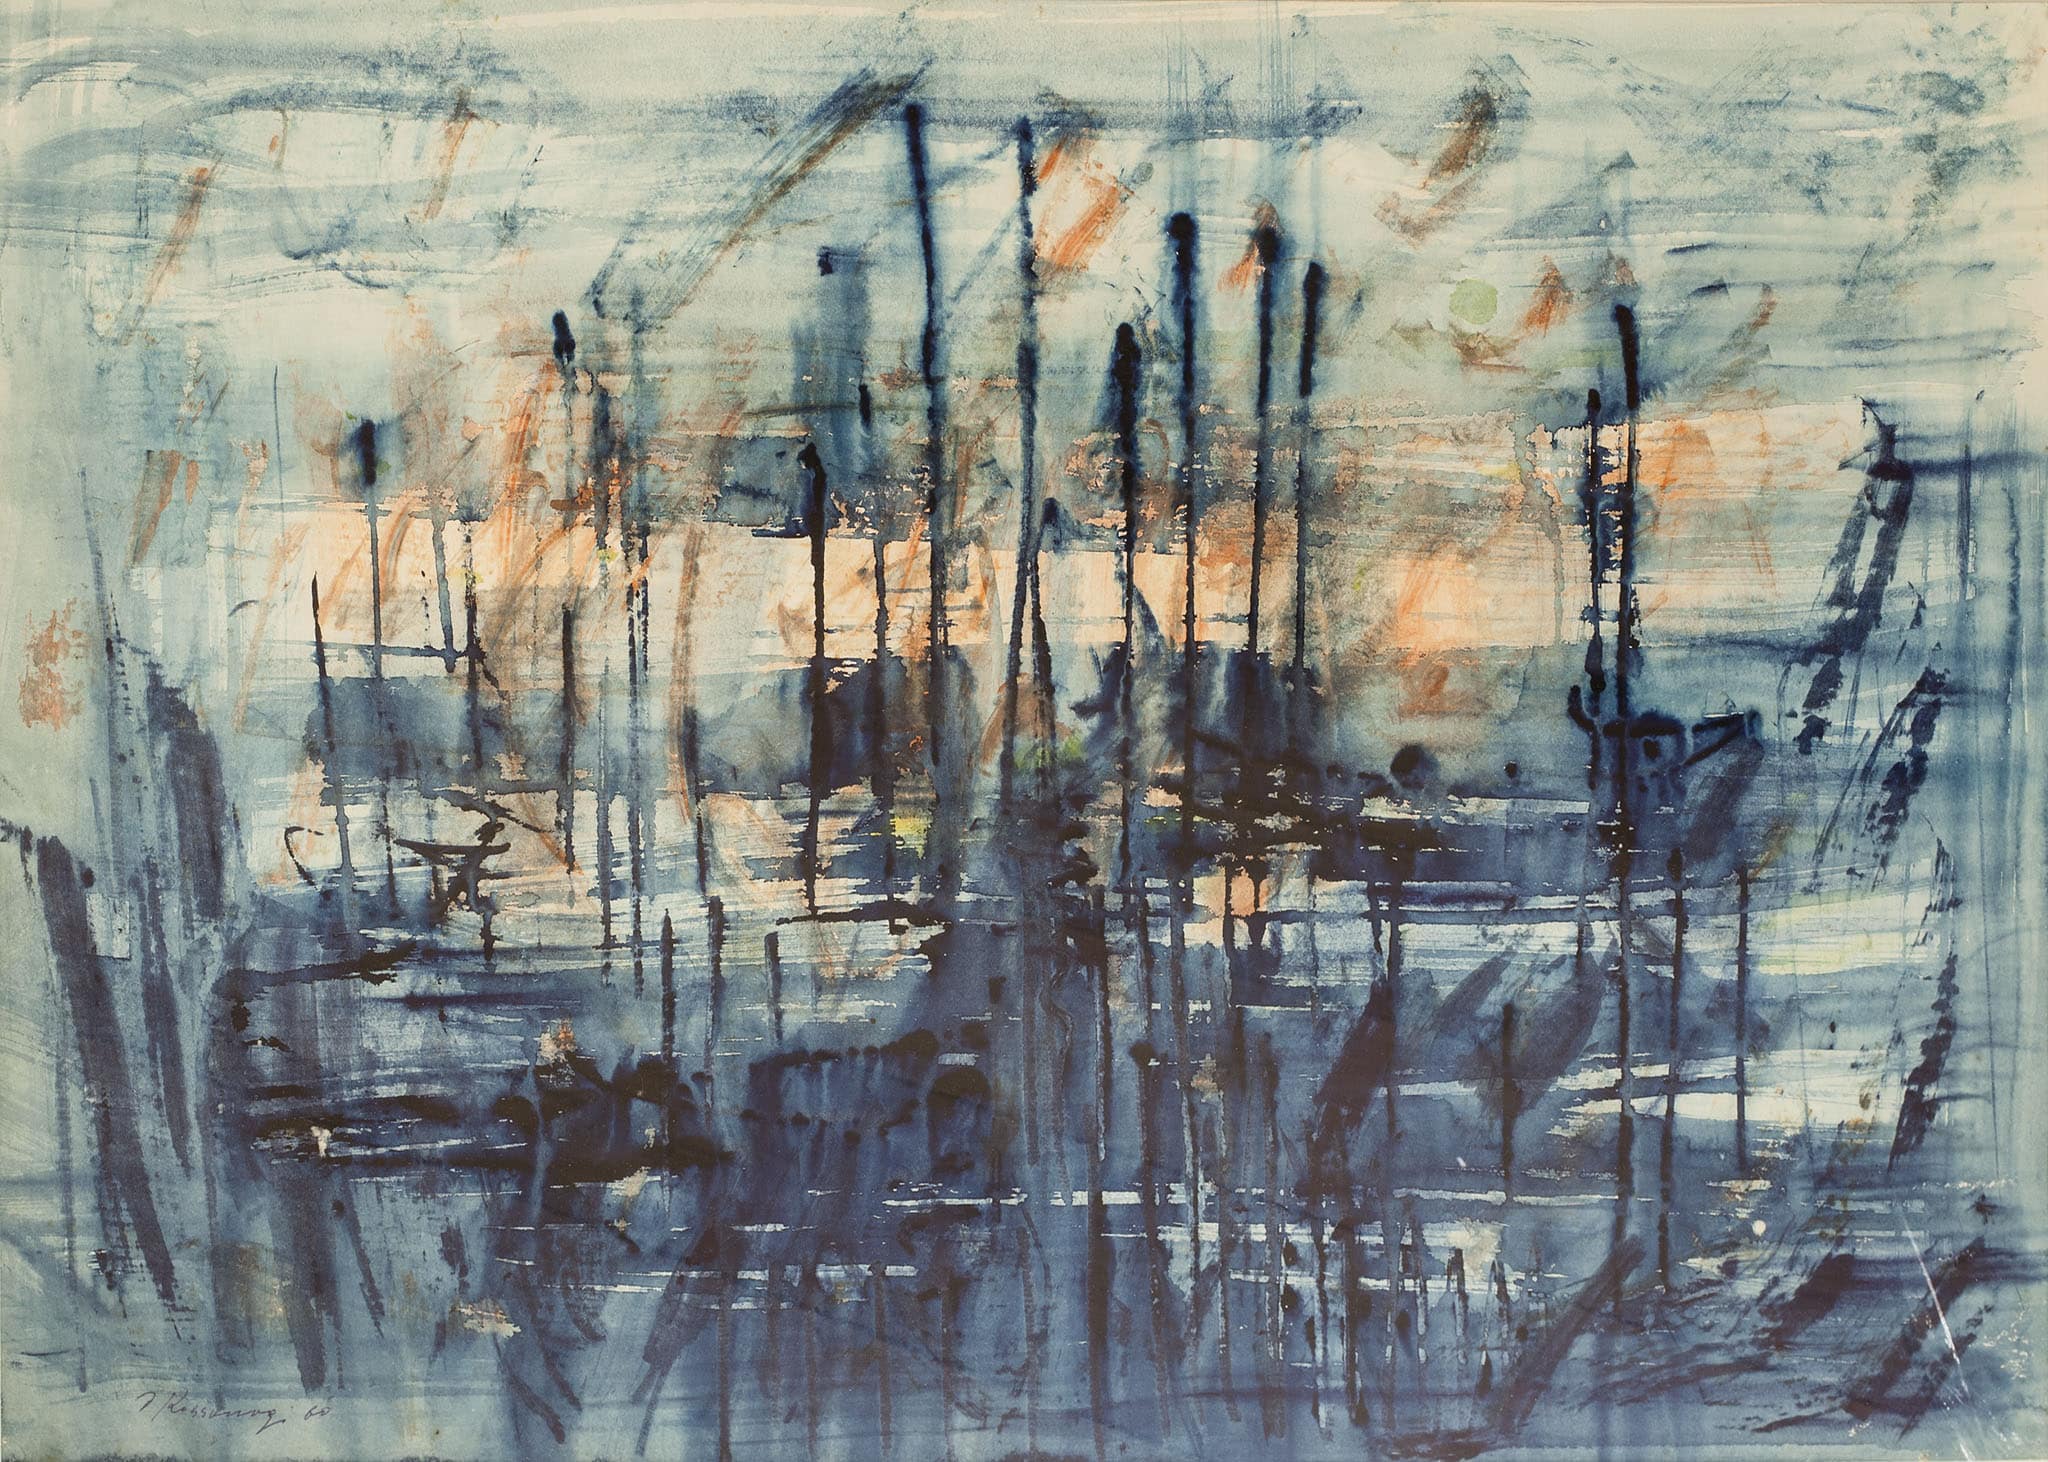 יוסף קוסונוגי, "נוף ימי", 1960, אקוורל על נייר, 70x50 ס"מ